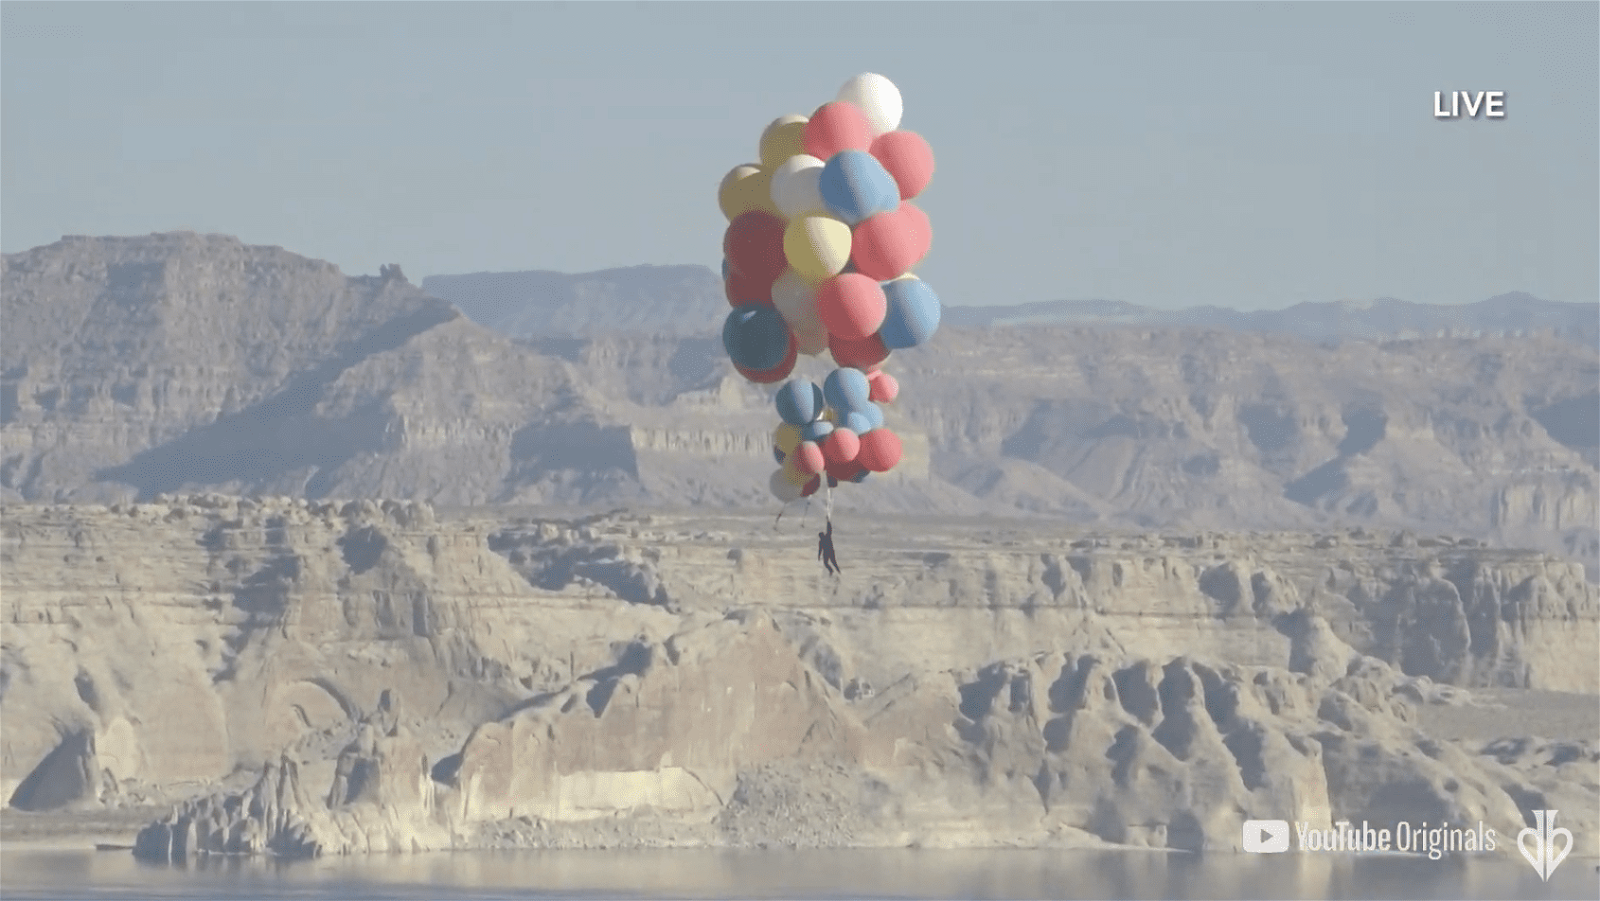 L’Ascension de David Blaine, à 7.300 mètres d’altitude suspendu à des ballons 🎈